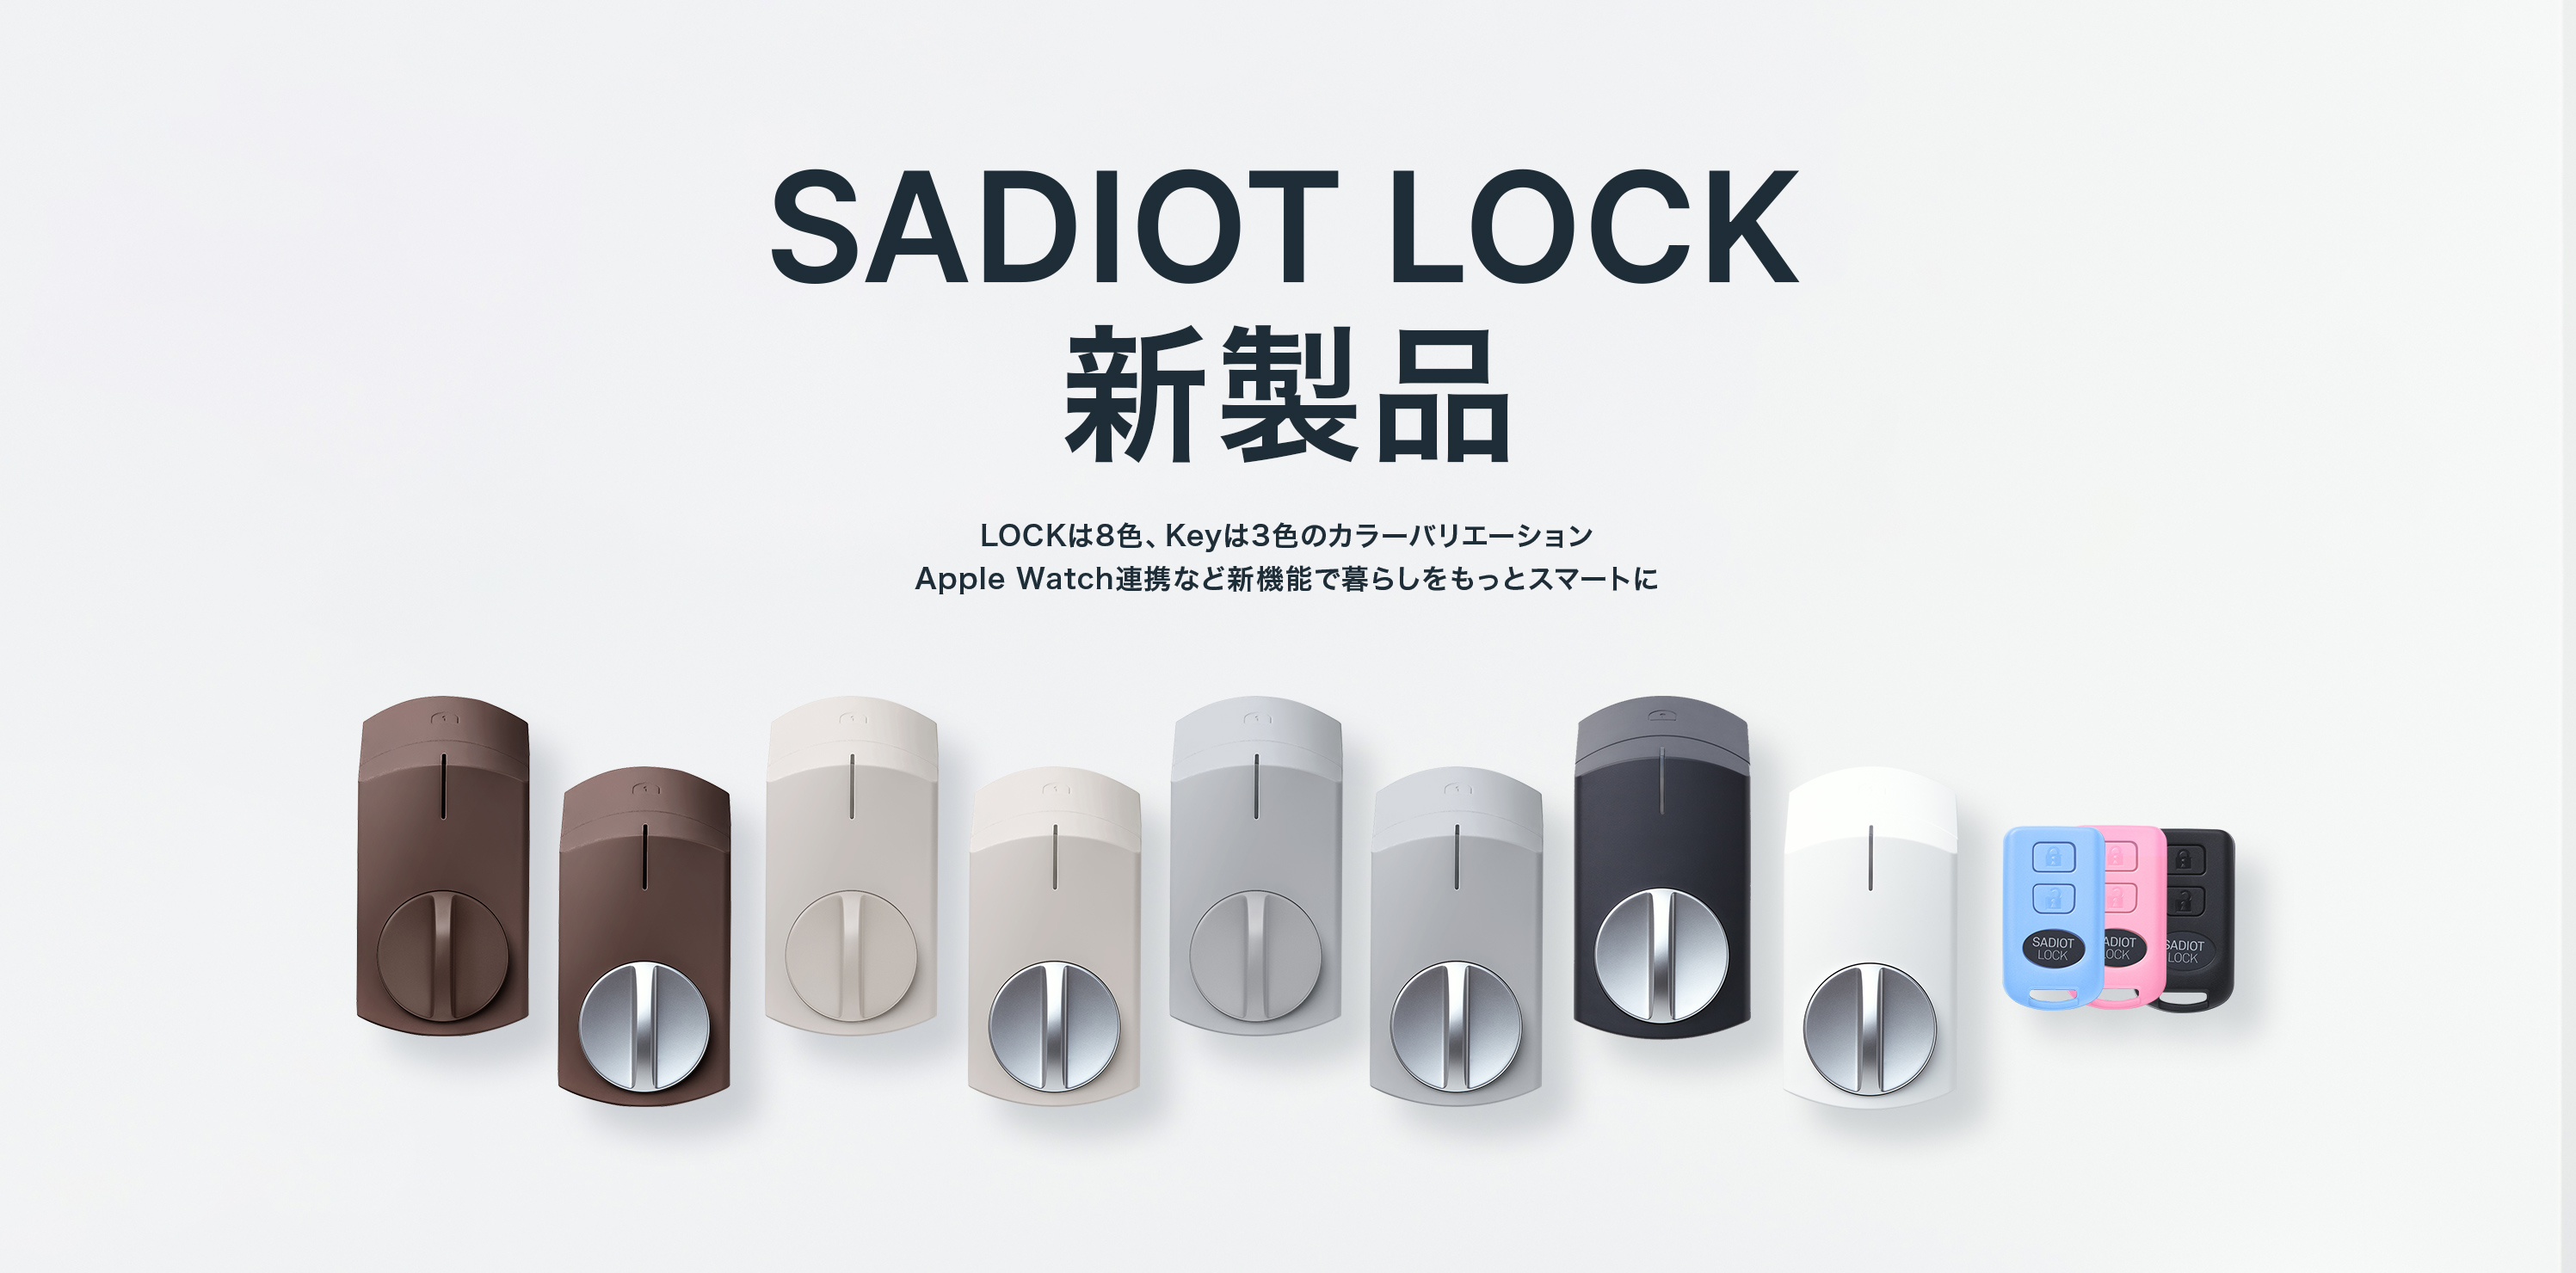 0円 【人気急上昇】 SADIOT LOCK ブラック スマートロック 自動施錠